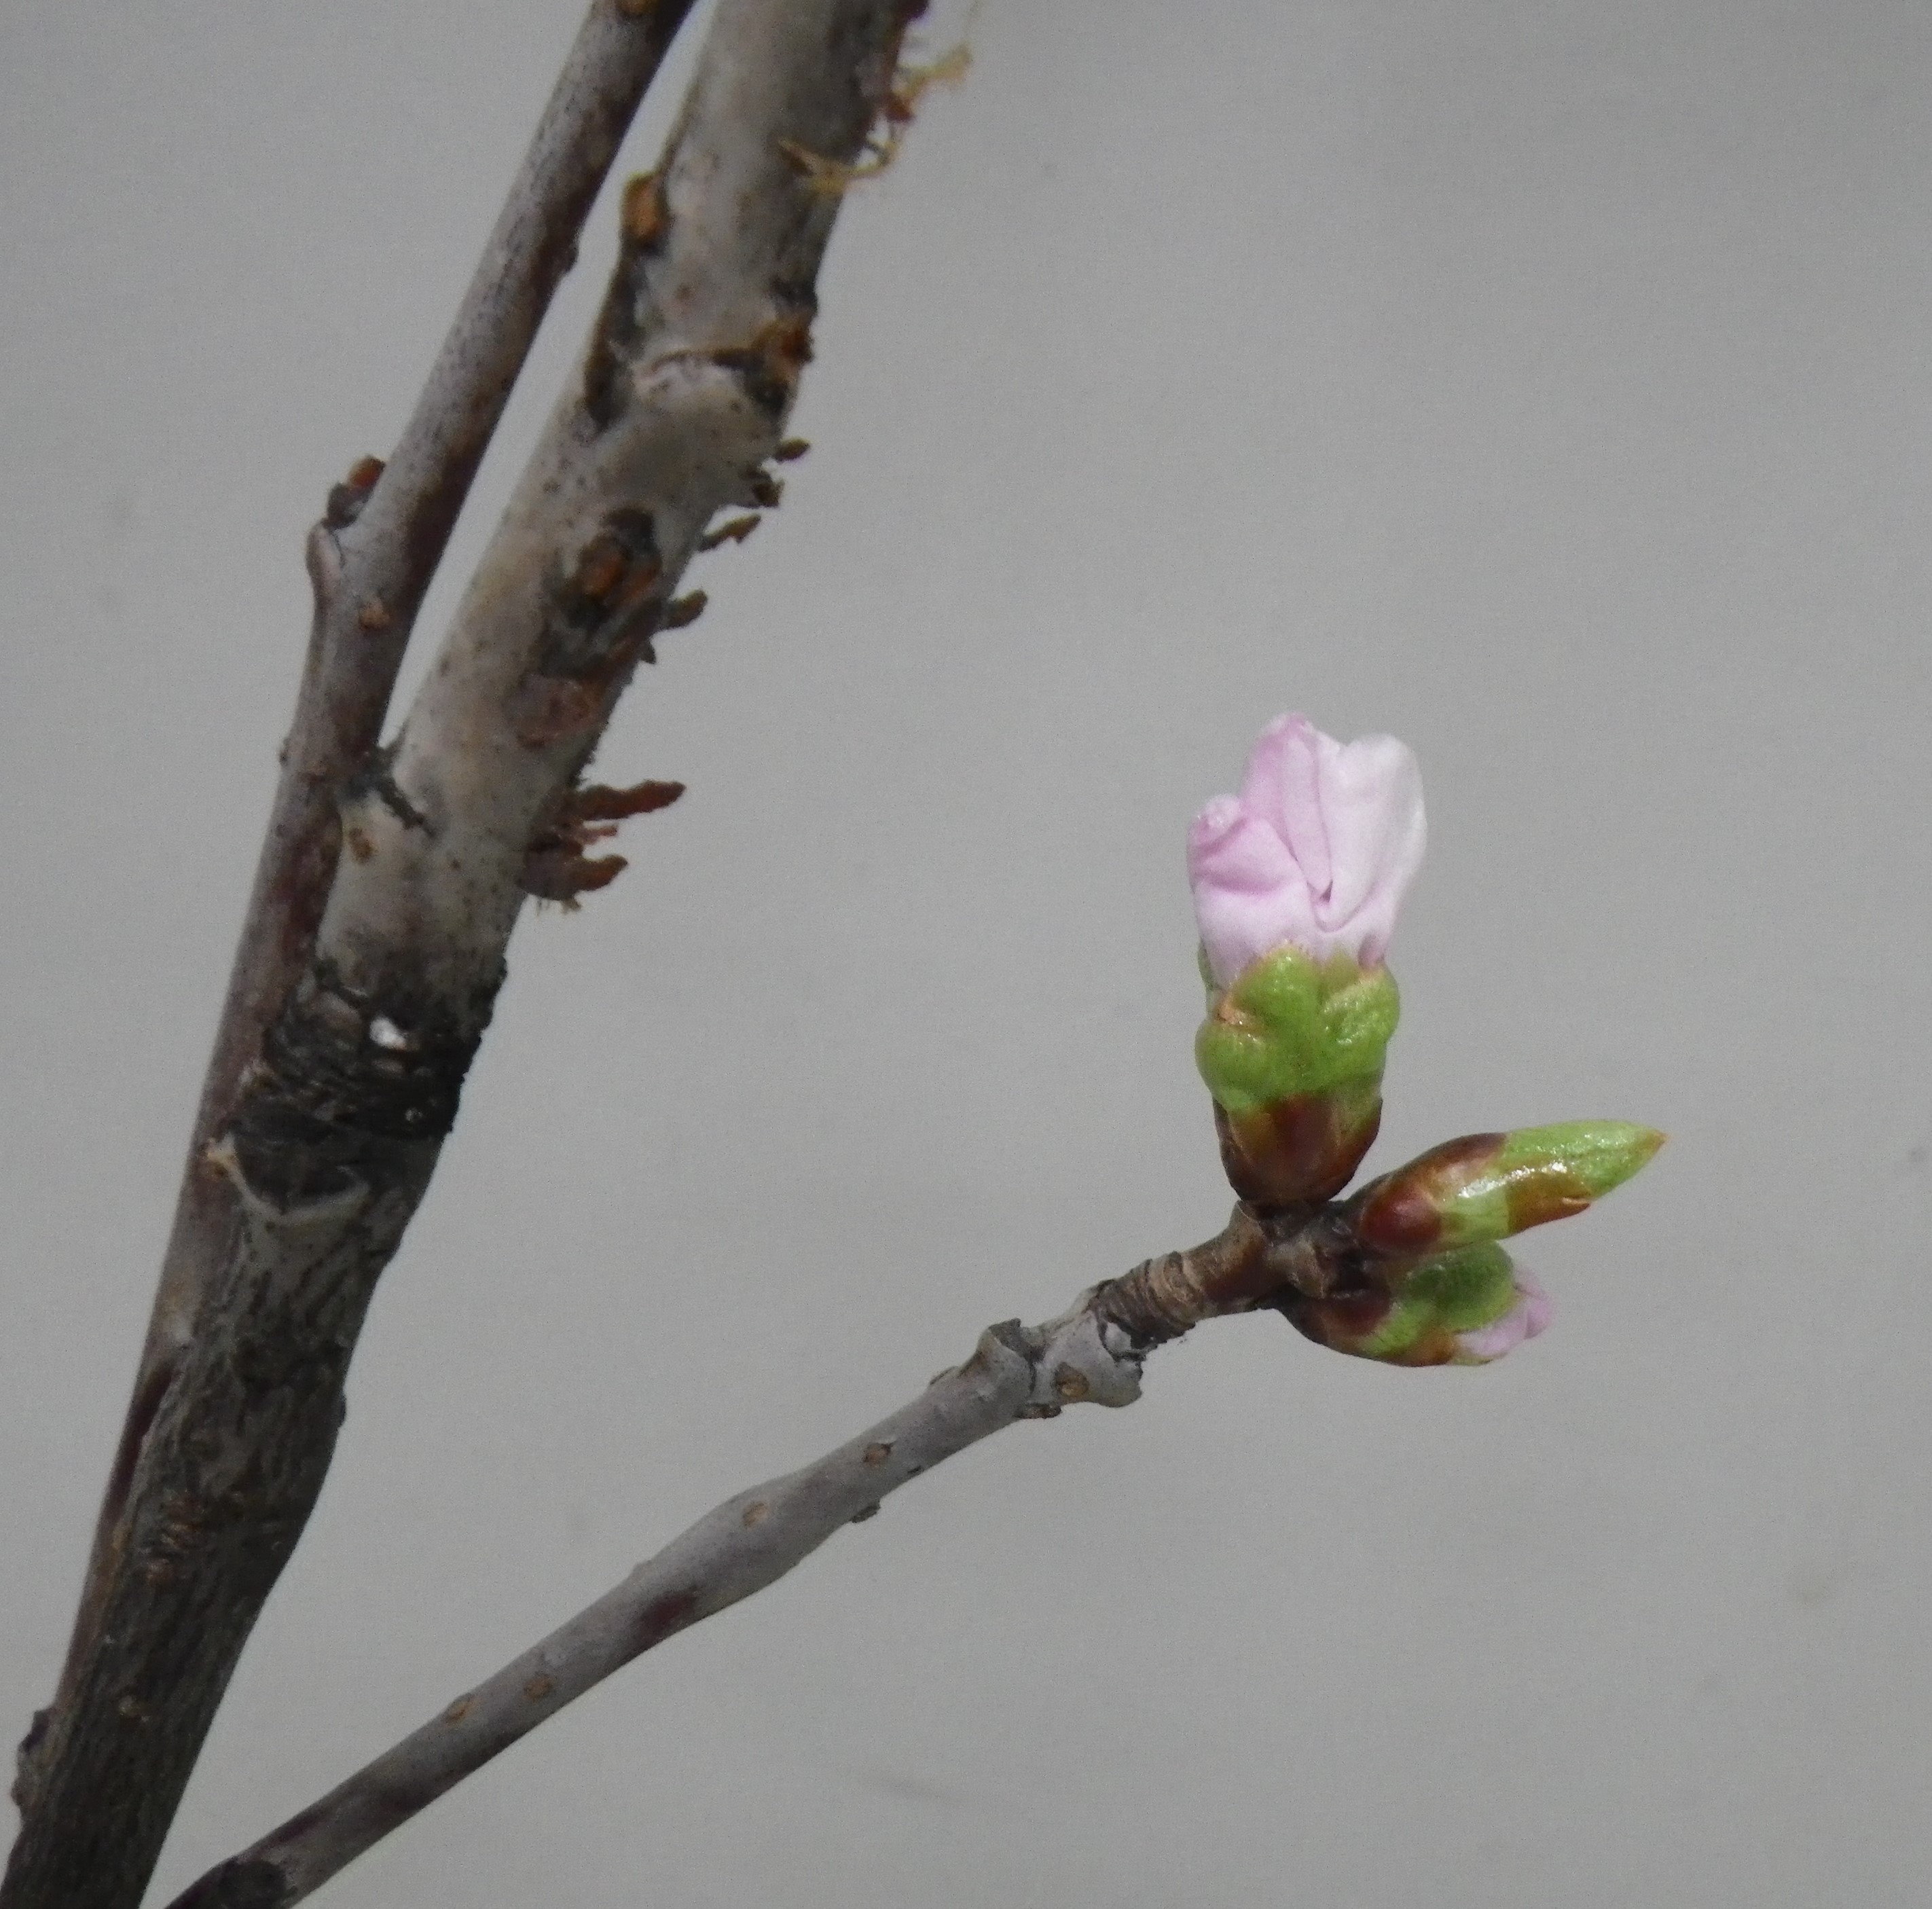 剪定したエゾヤマザクラの2つの蕾が緩み始めピンクの花びらが見え始めた3月6日の画像